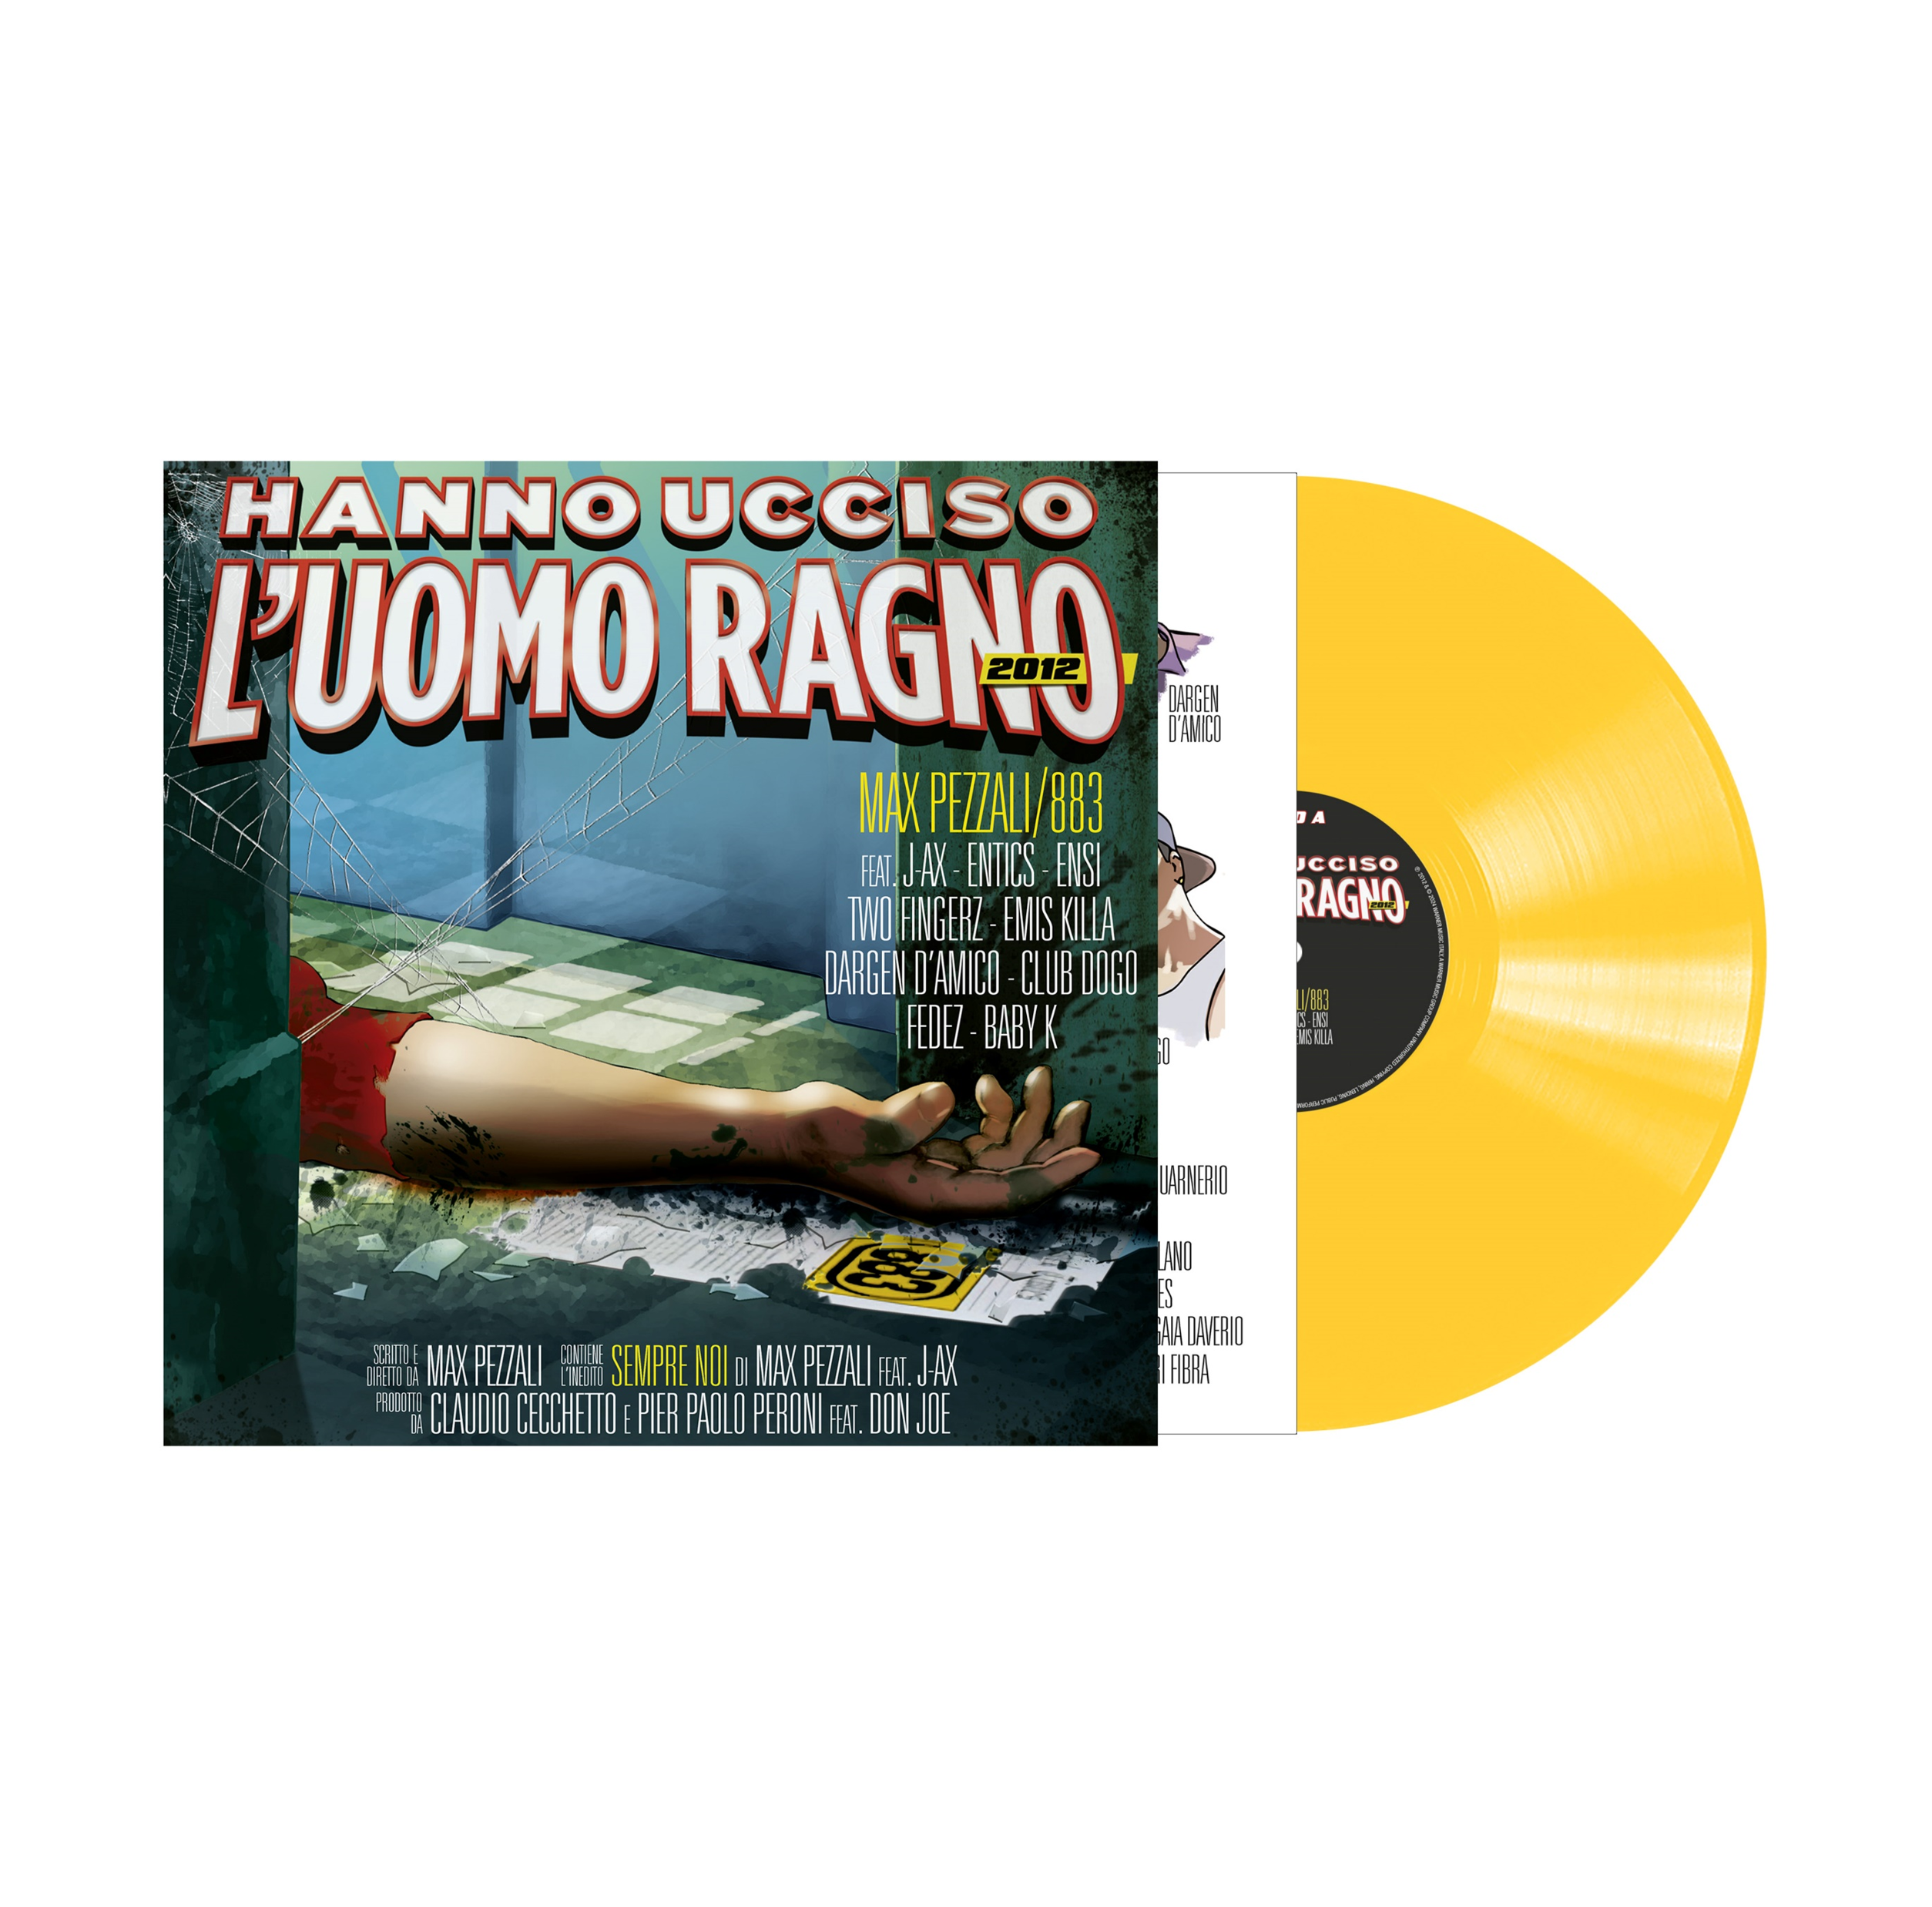 Hanno Ucciso L'Uomo Ragno - 2012 (Vinile) – Warner Music Italy Shop